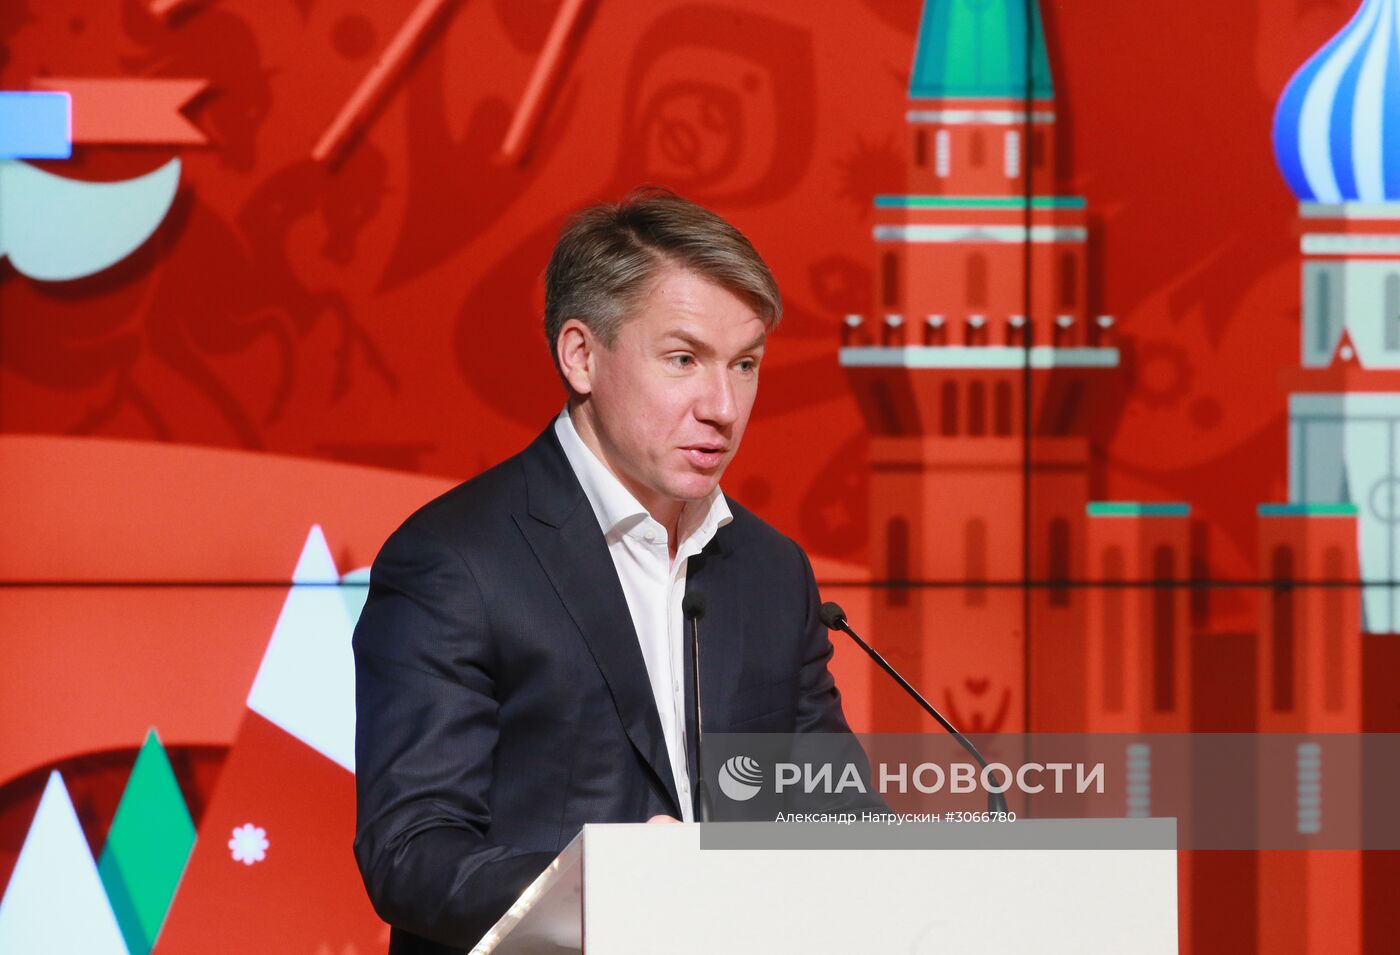 Заседание Оргкомитета Чемпионата мира по футболу FIFA 2018 в России